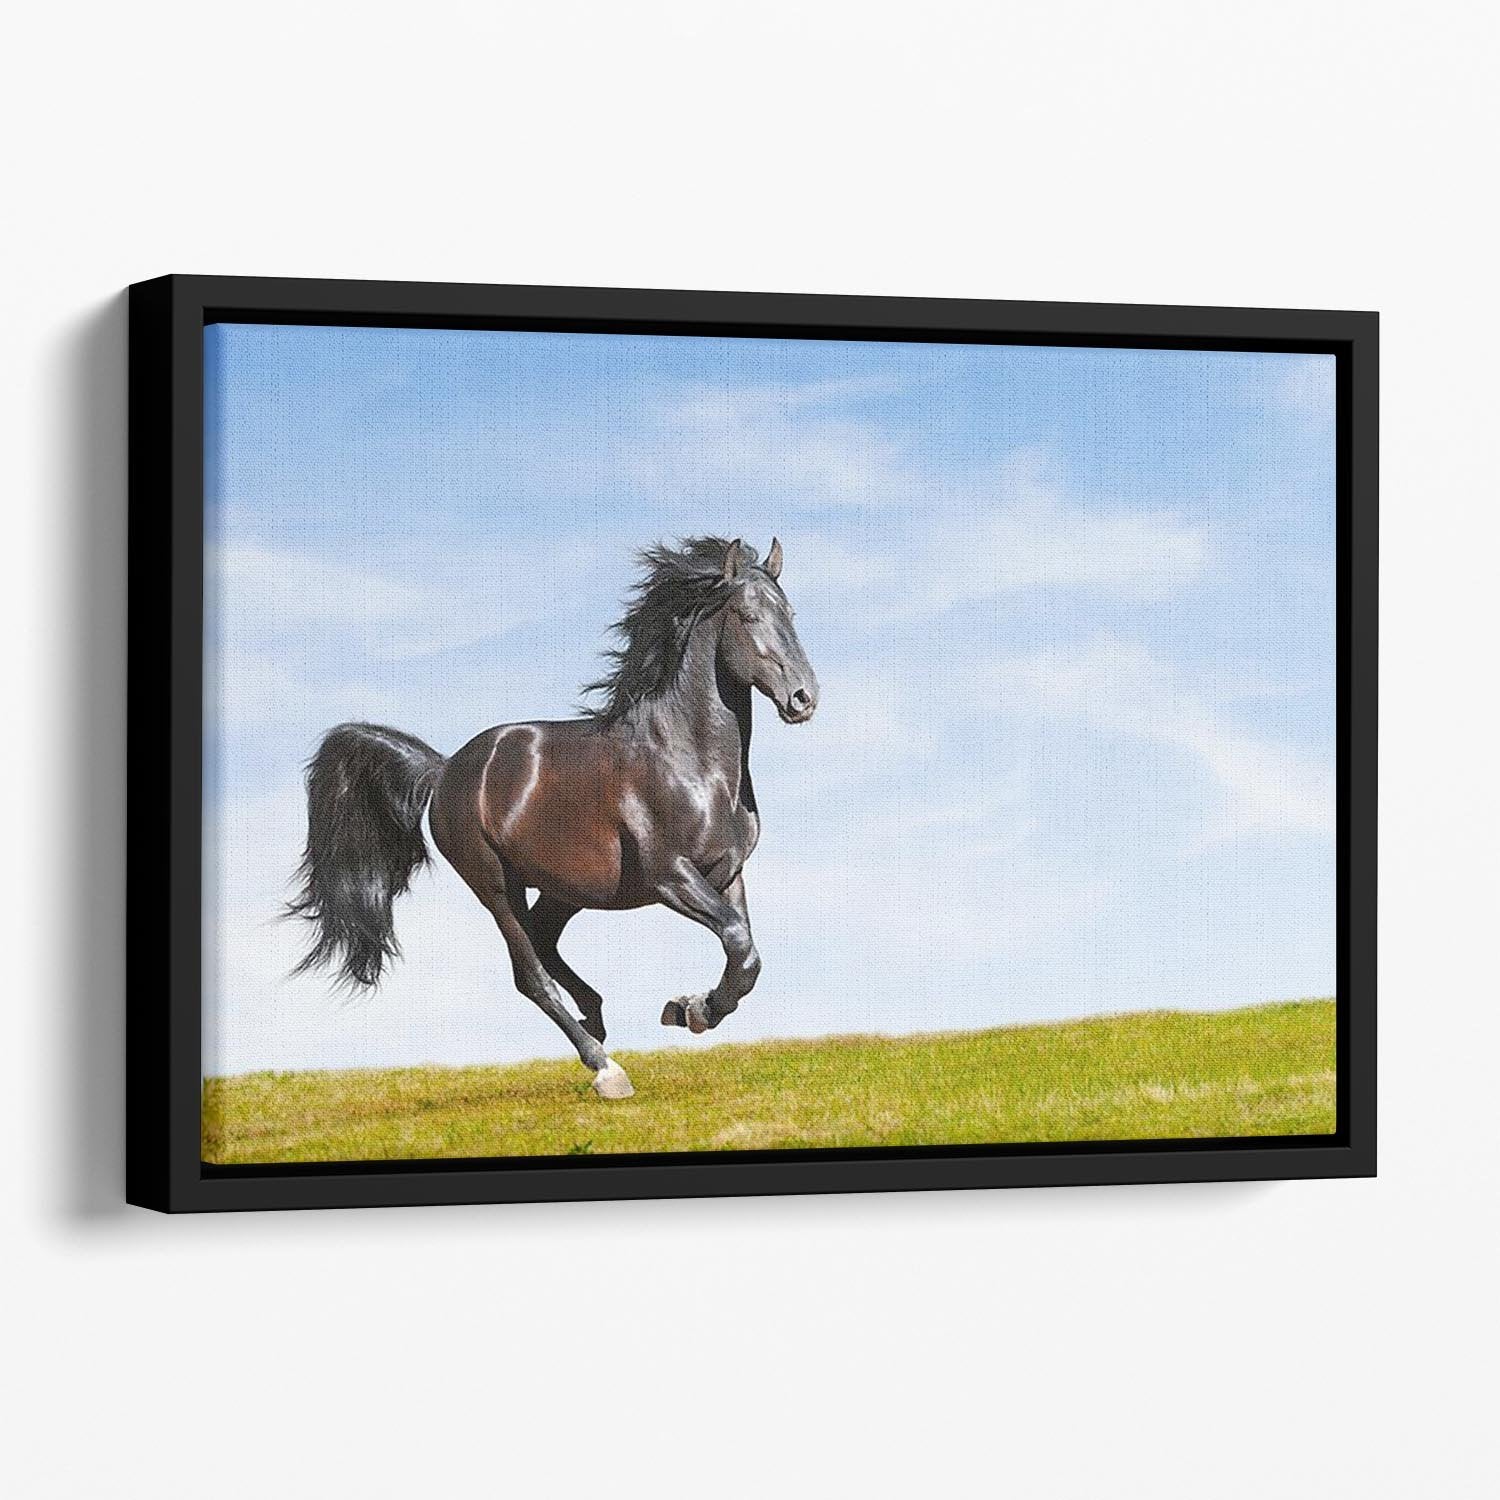 Black Kladruby horse rung gallop Floating Framed Canvas - Canvas Art Rocks - 1